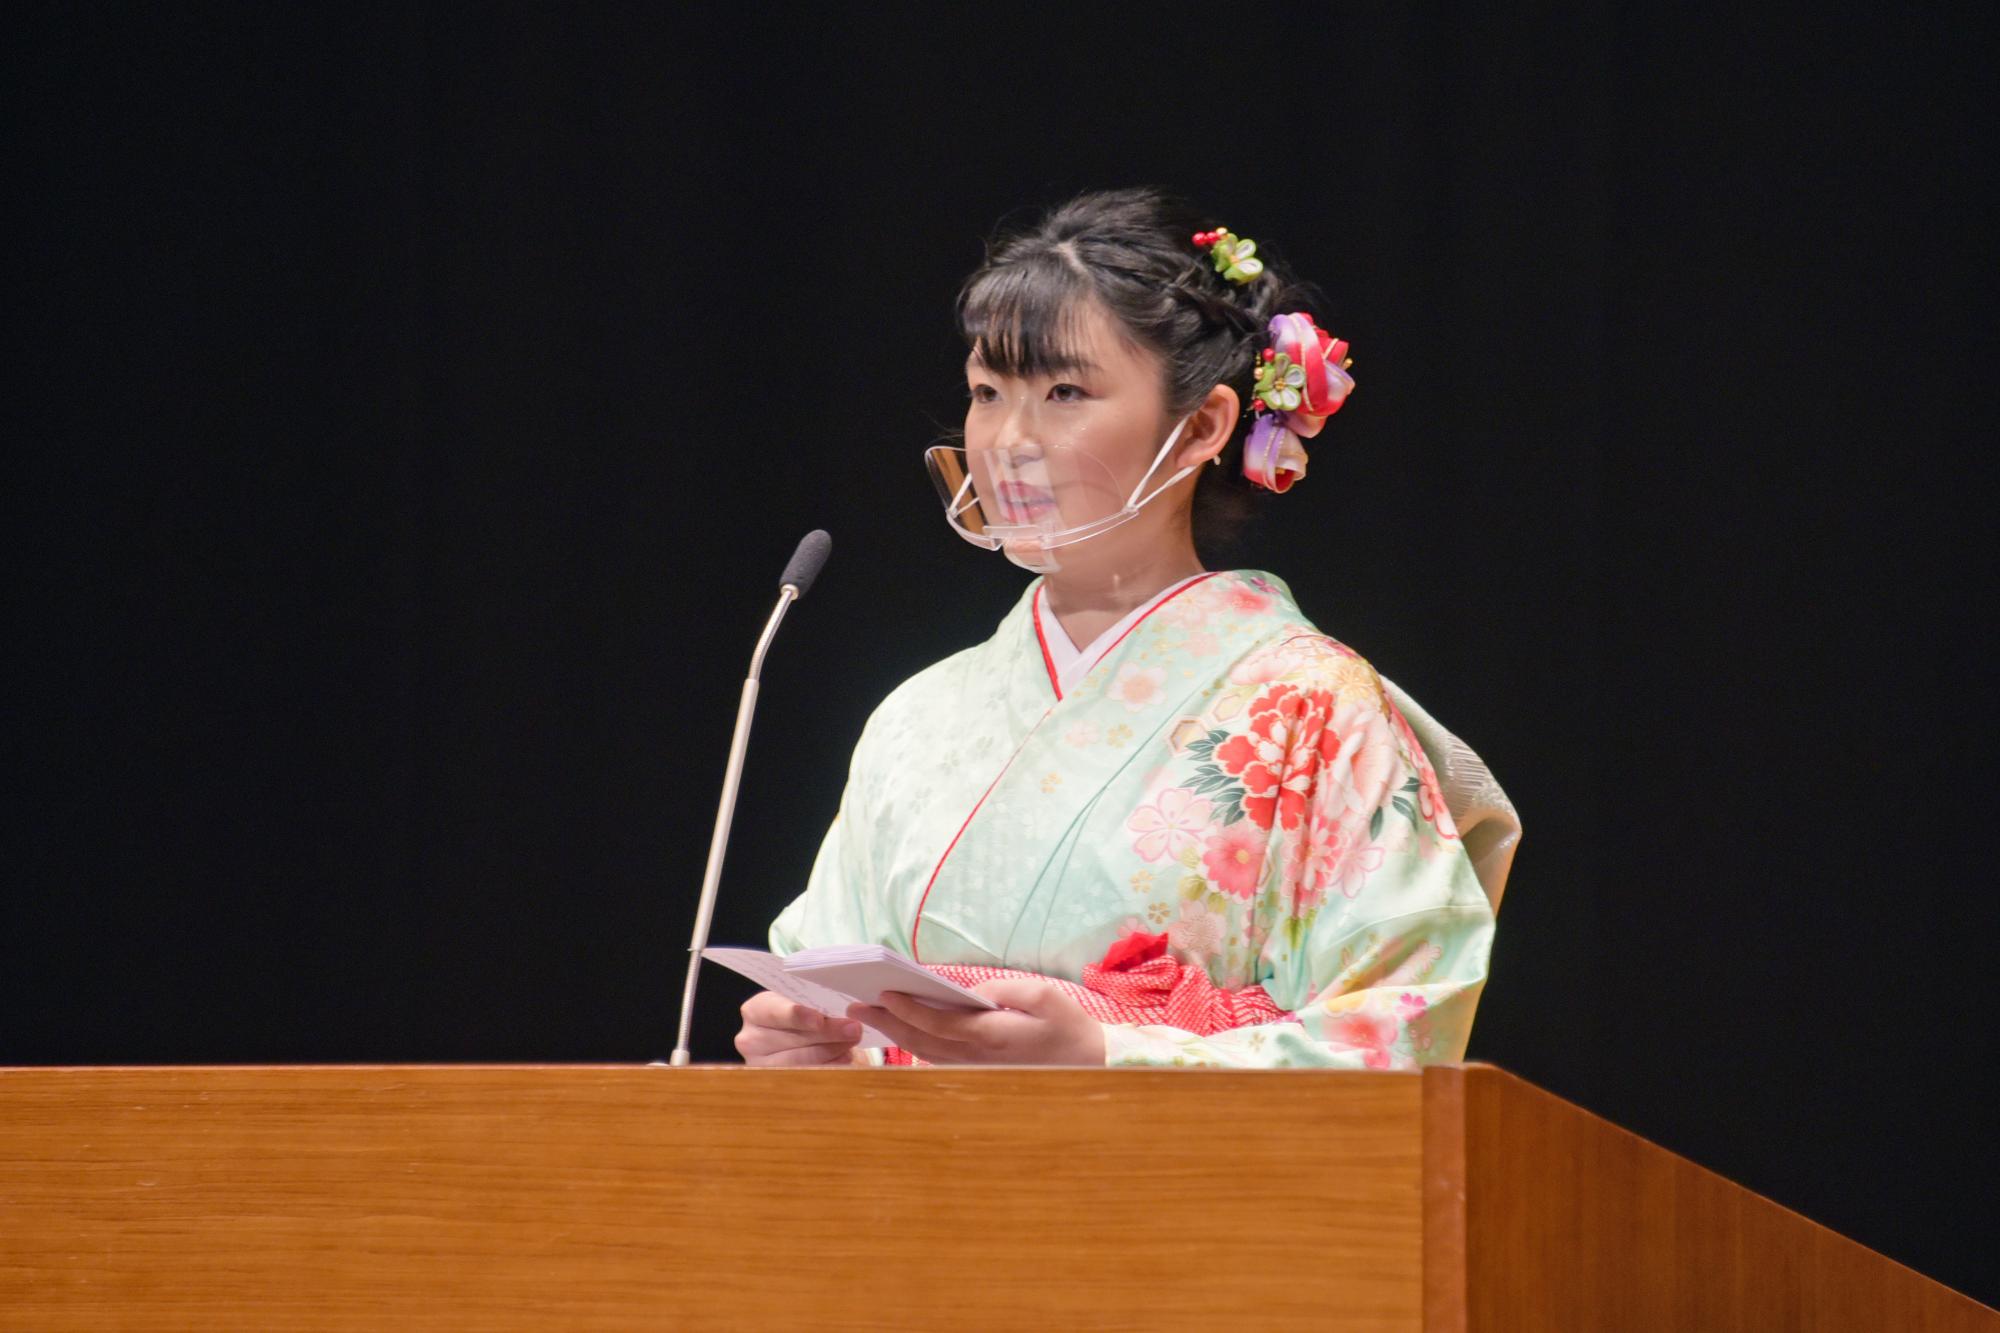 成人式実行委員長の菊地美桜さんによる「誓いのことば」